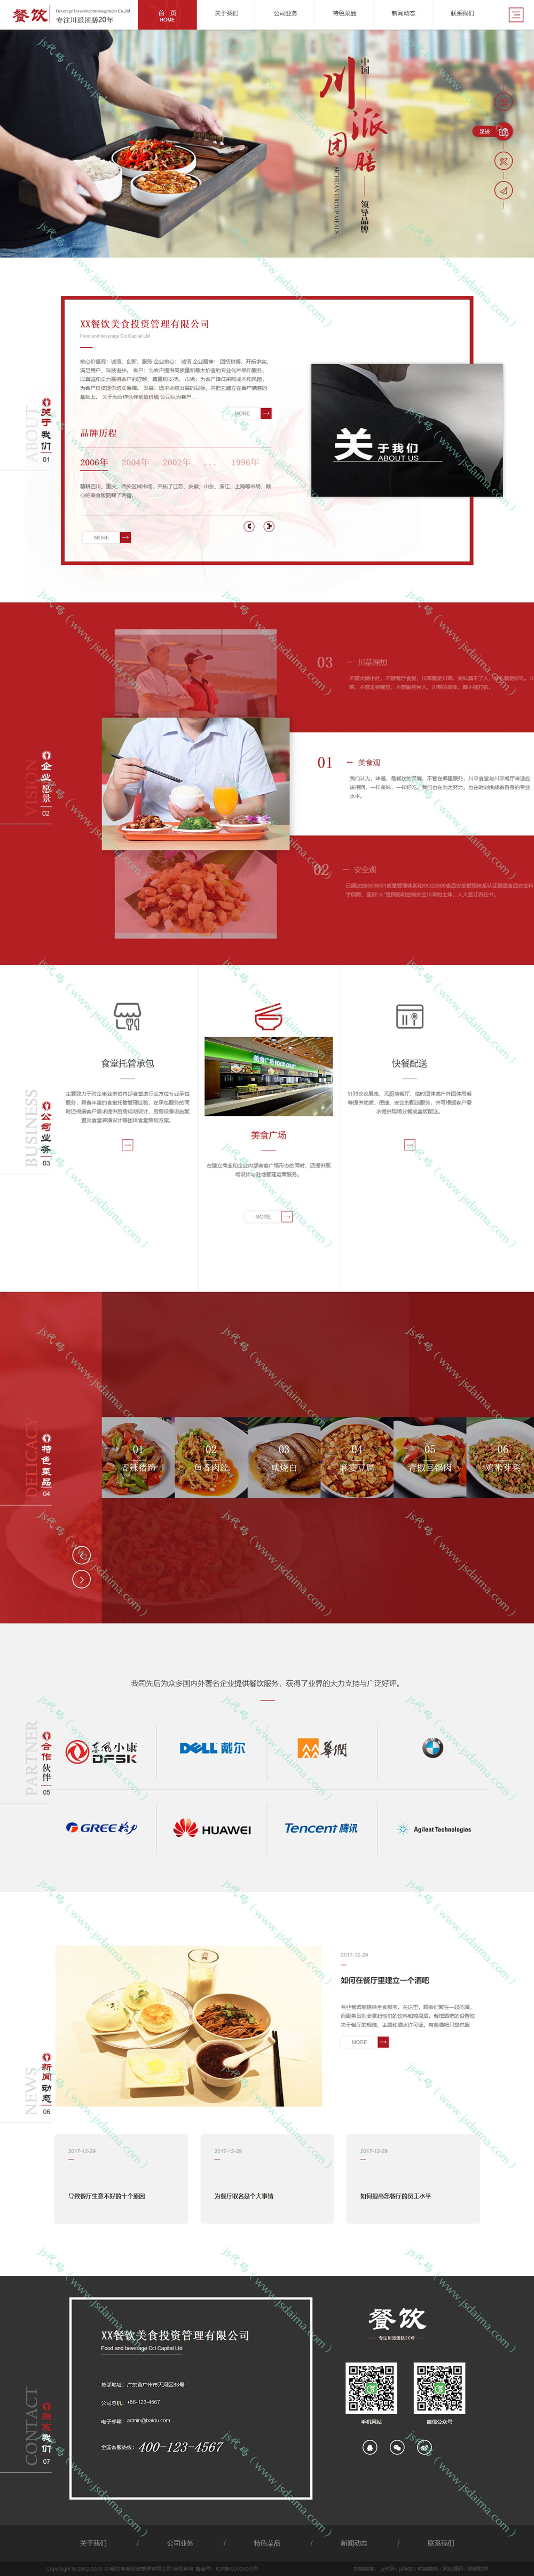 HTML5高端炫酷大气响应式餐饮美食公司企业网站模板